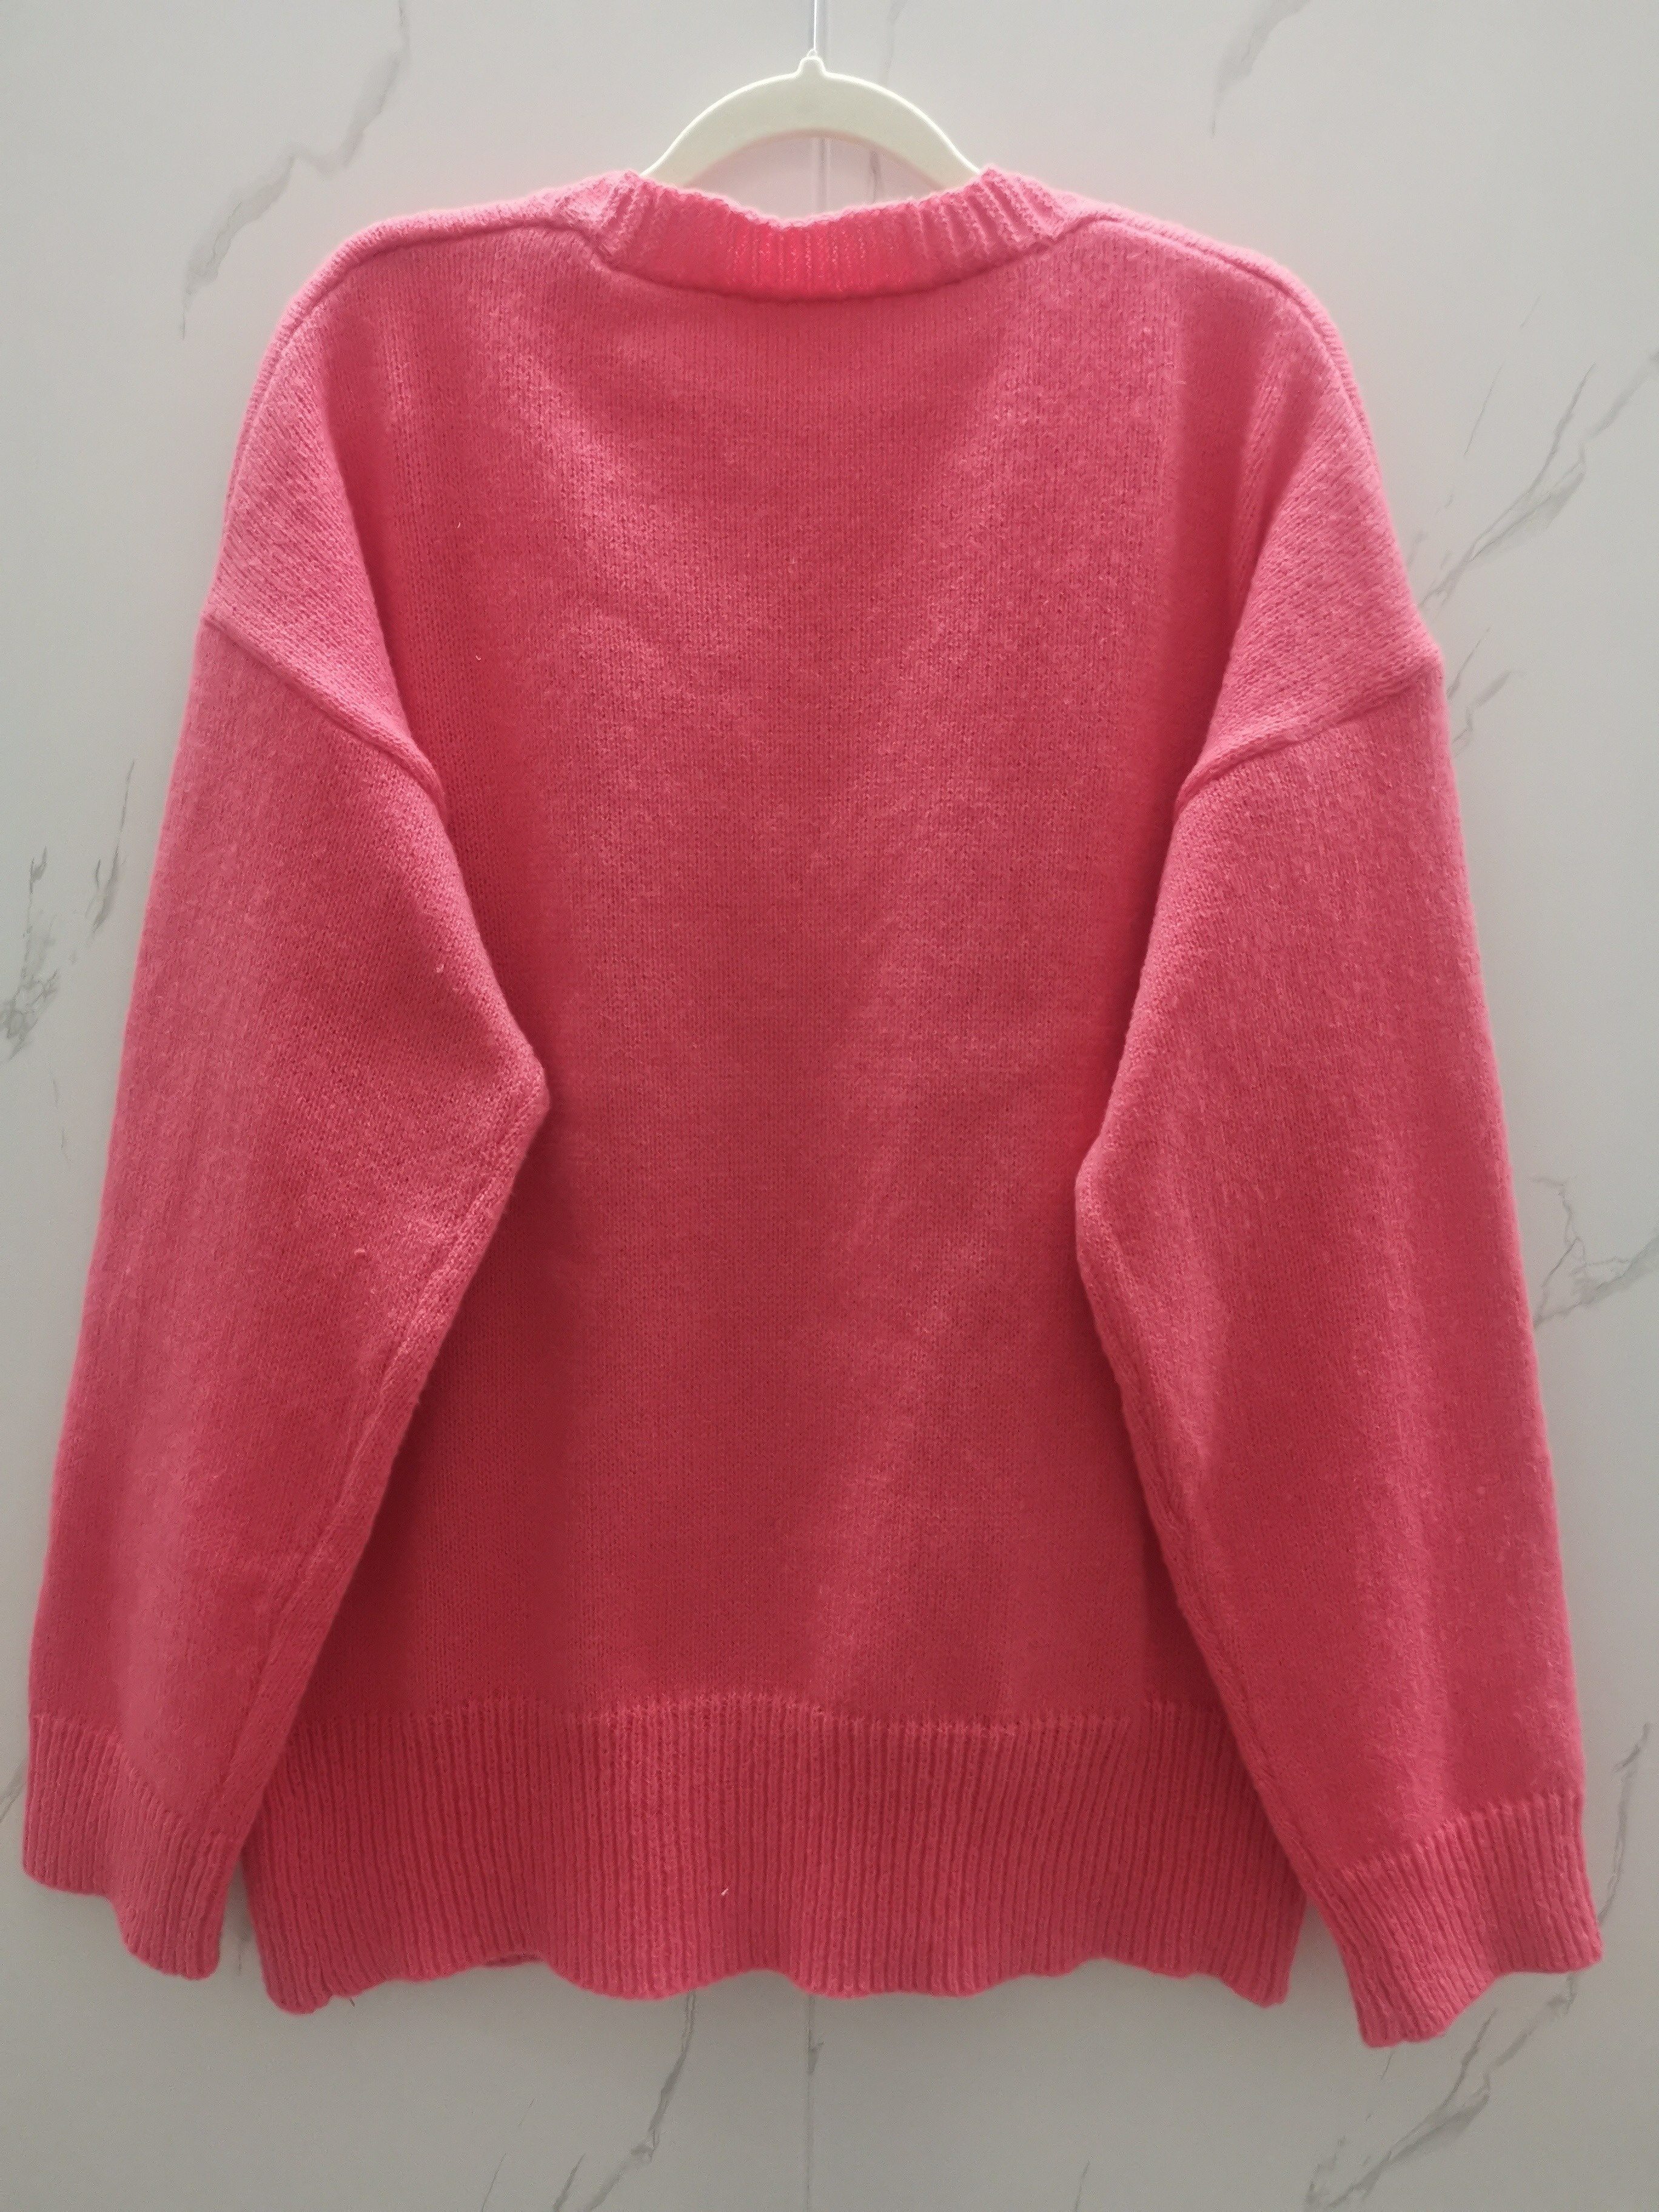 Suéteres de maternidad de punto rosa para mujeres embarazadas